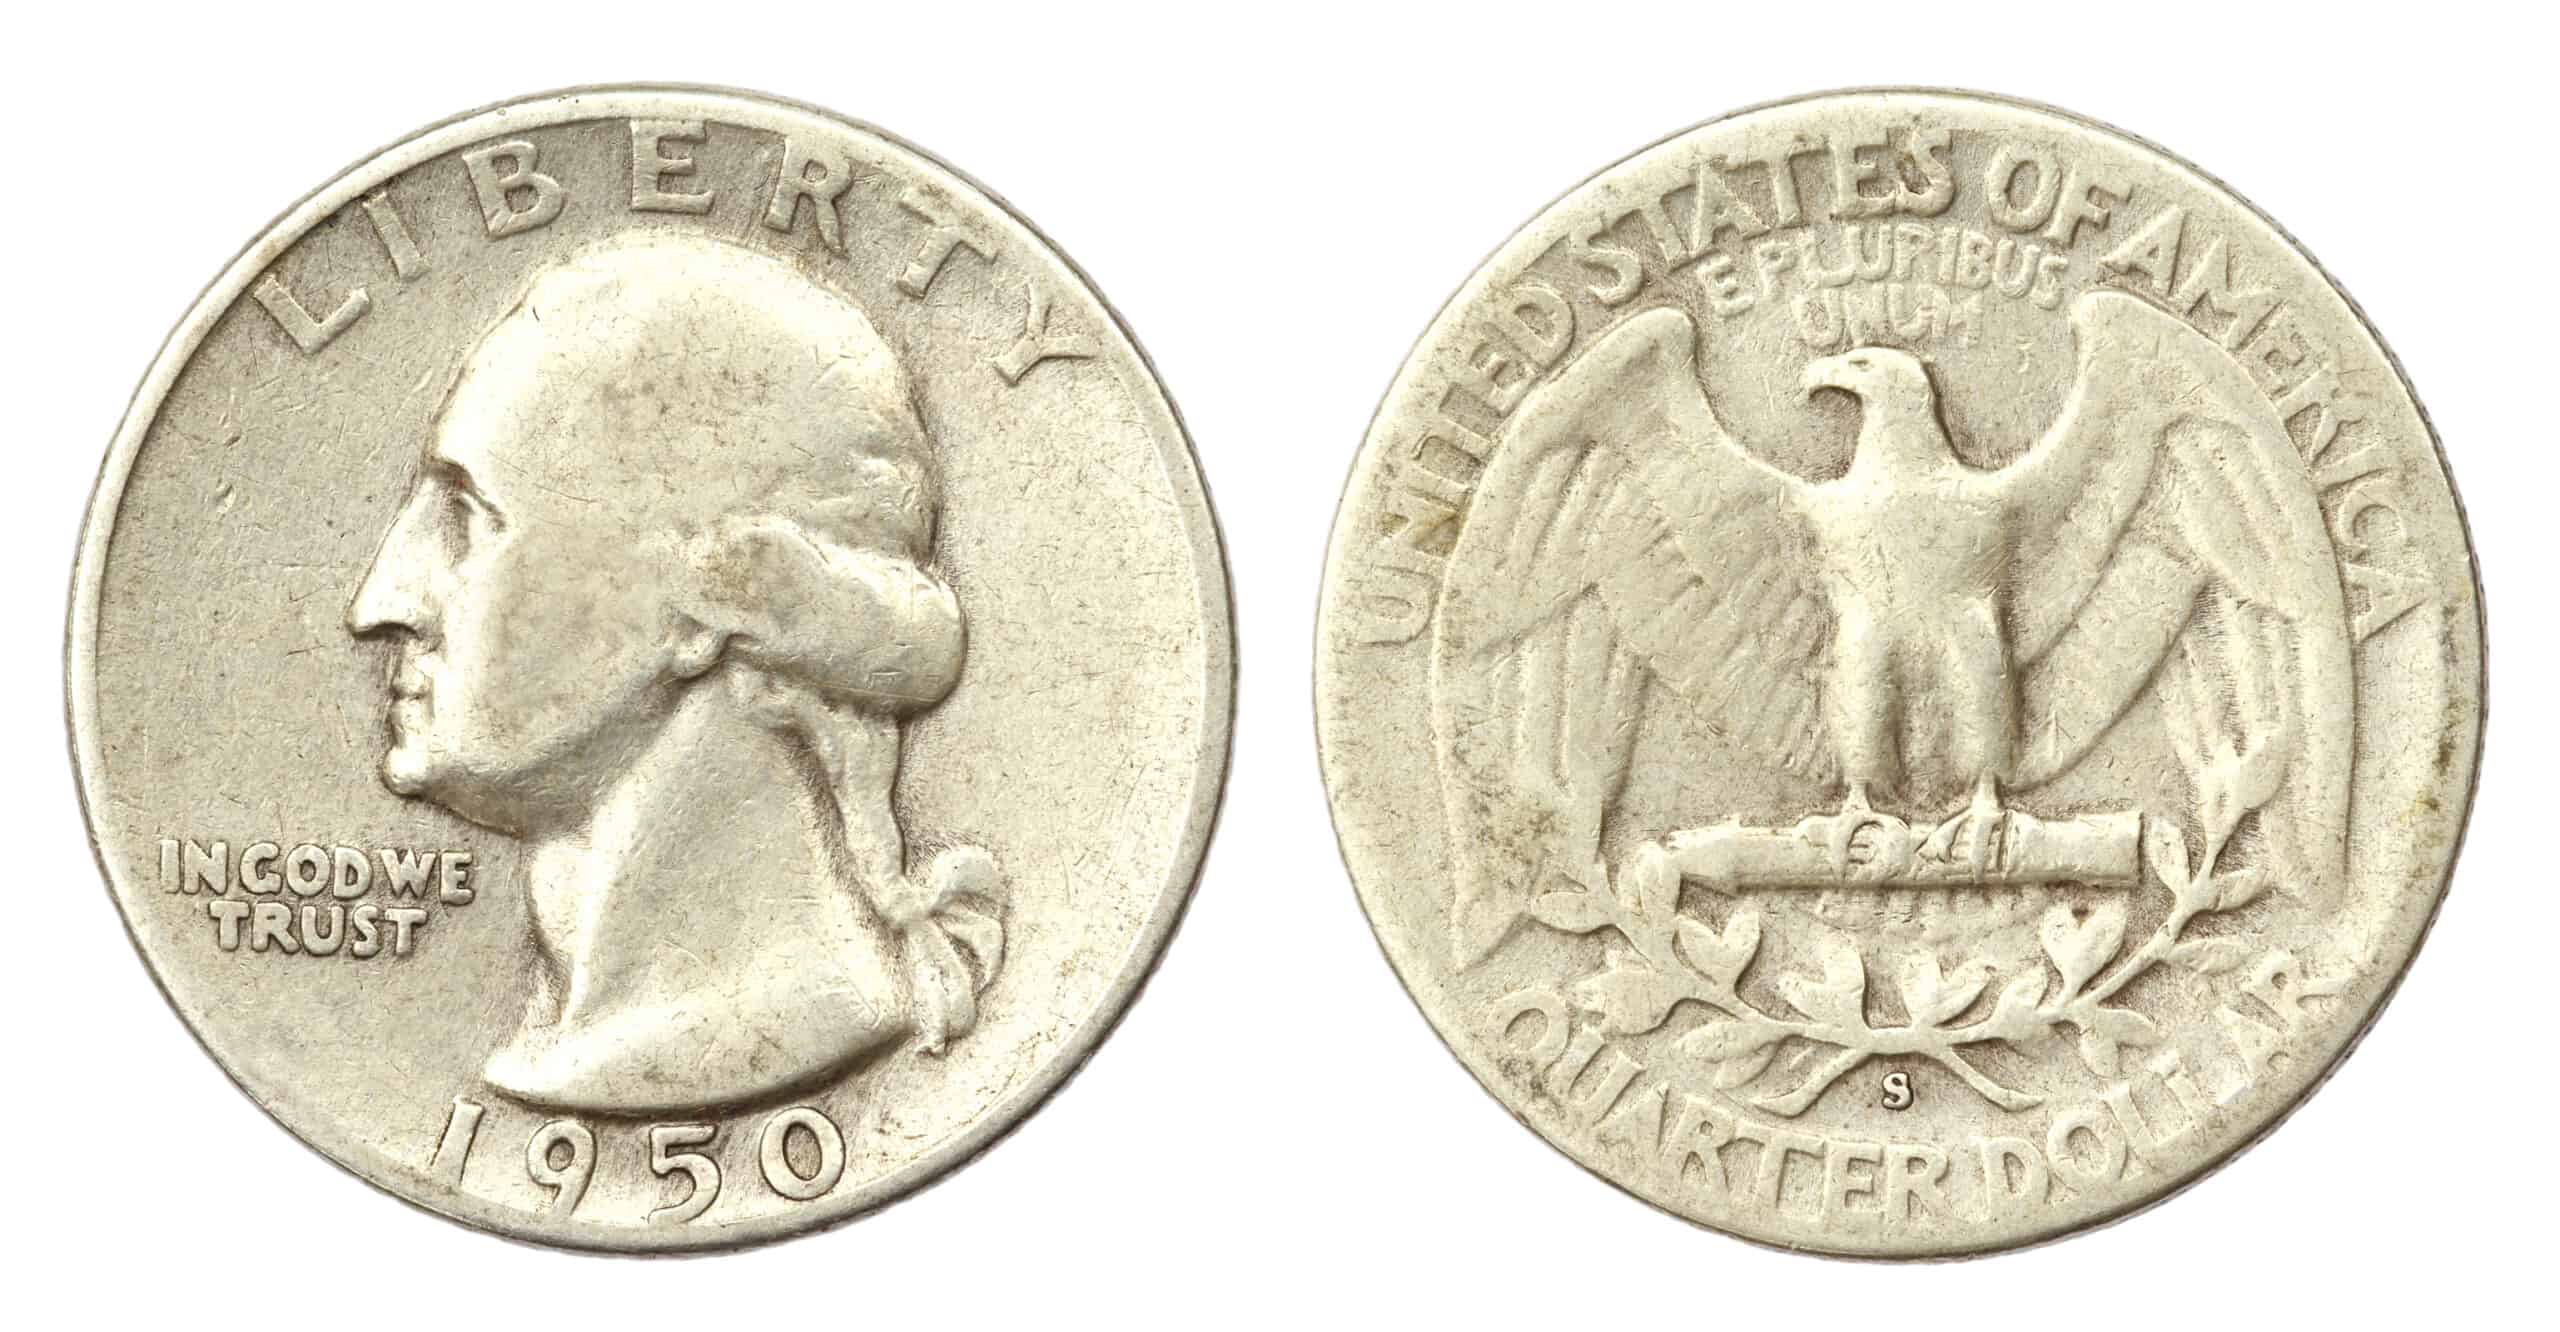 1950 Quarter vale dinero